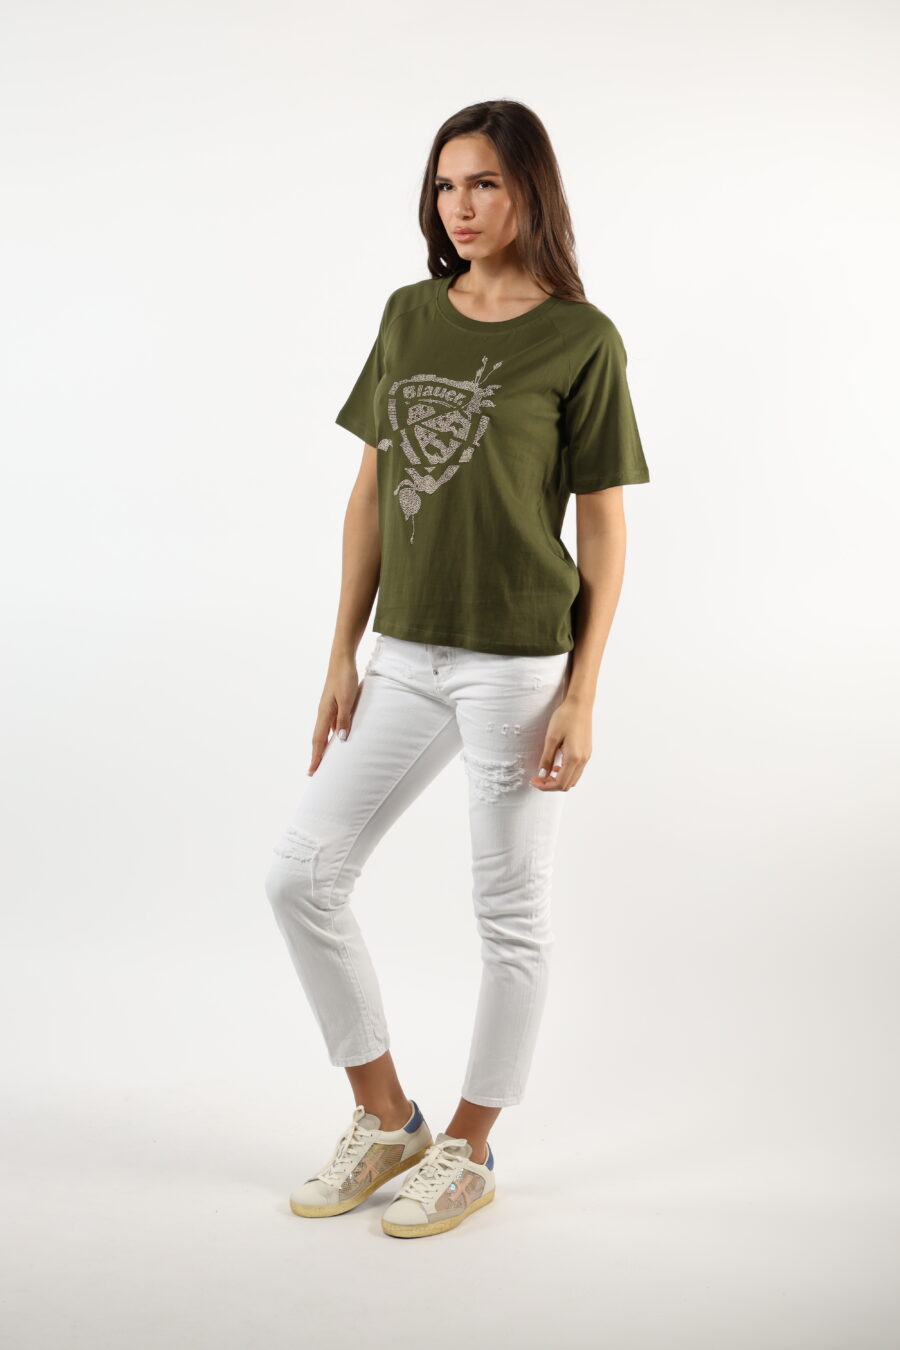 Camiseta verde militar con maxilogo parche dorado - 110617